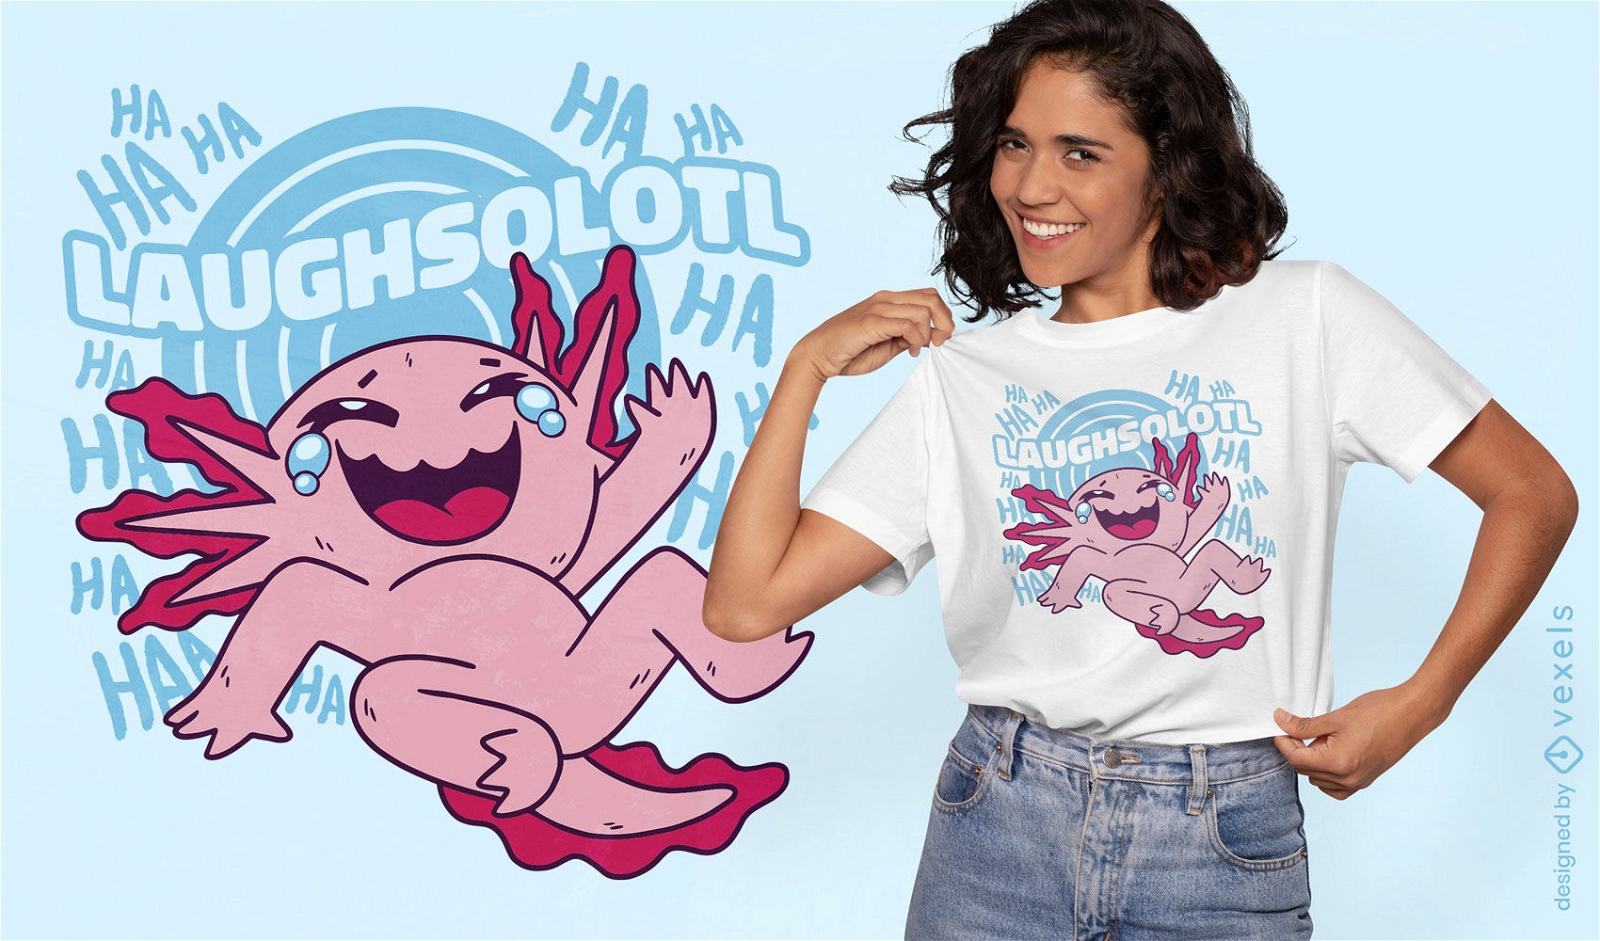 Laughsolotl funny axolotl t-shirt design